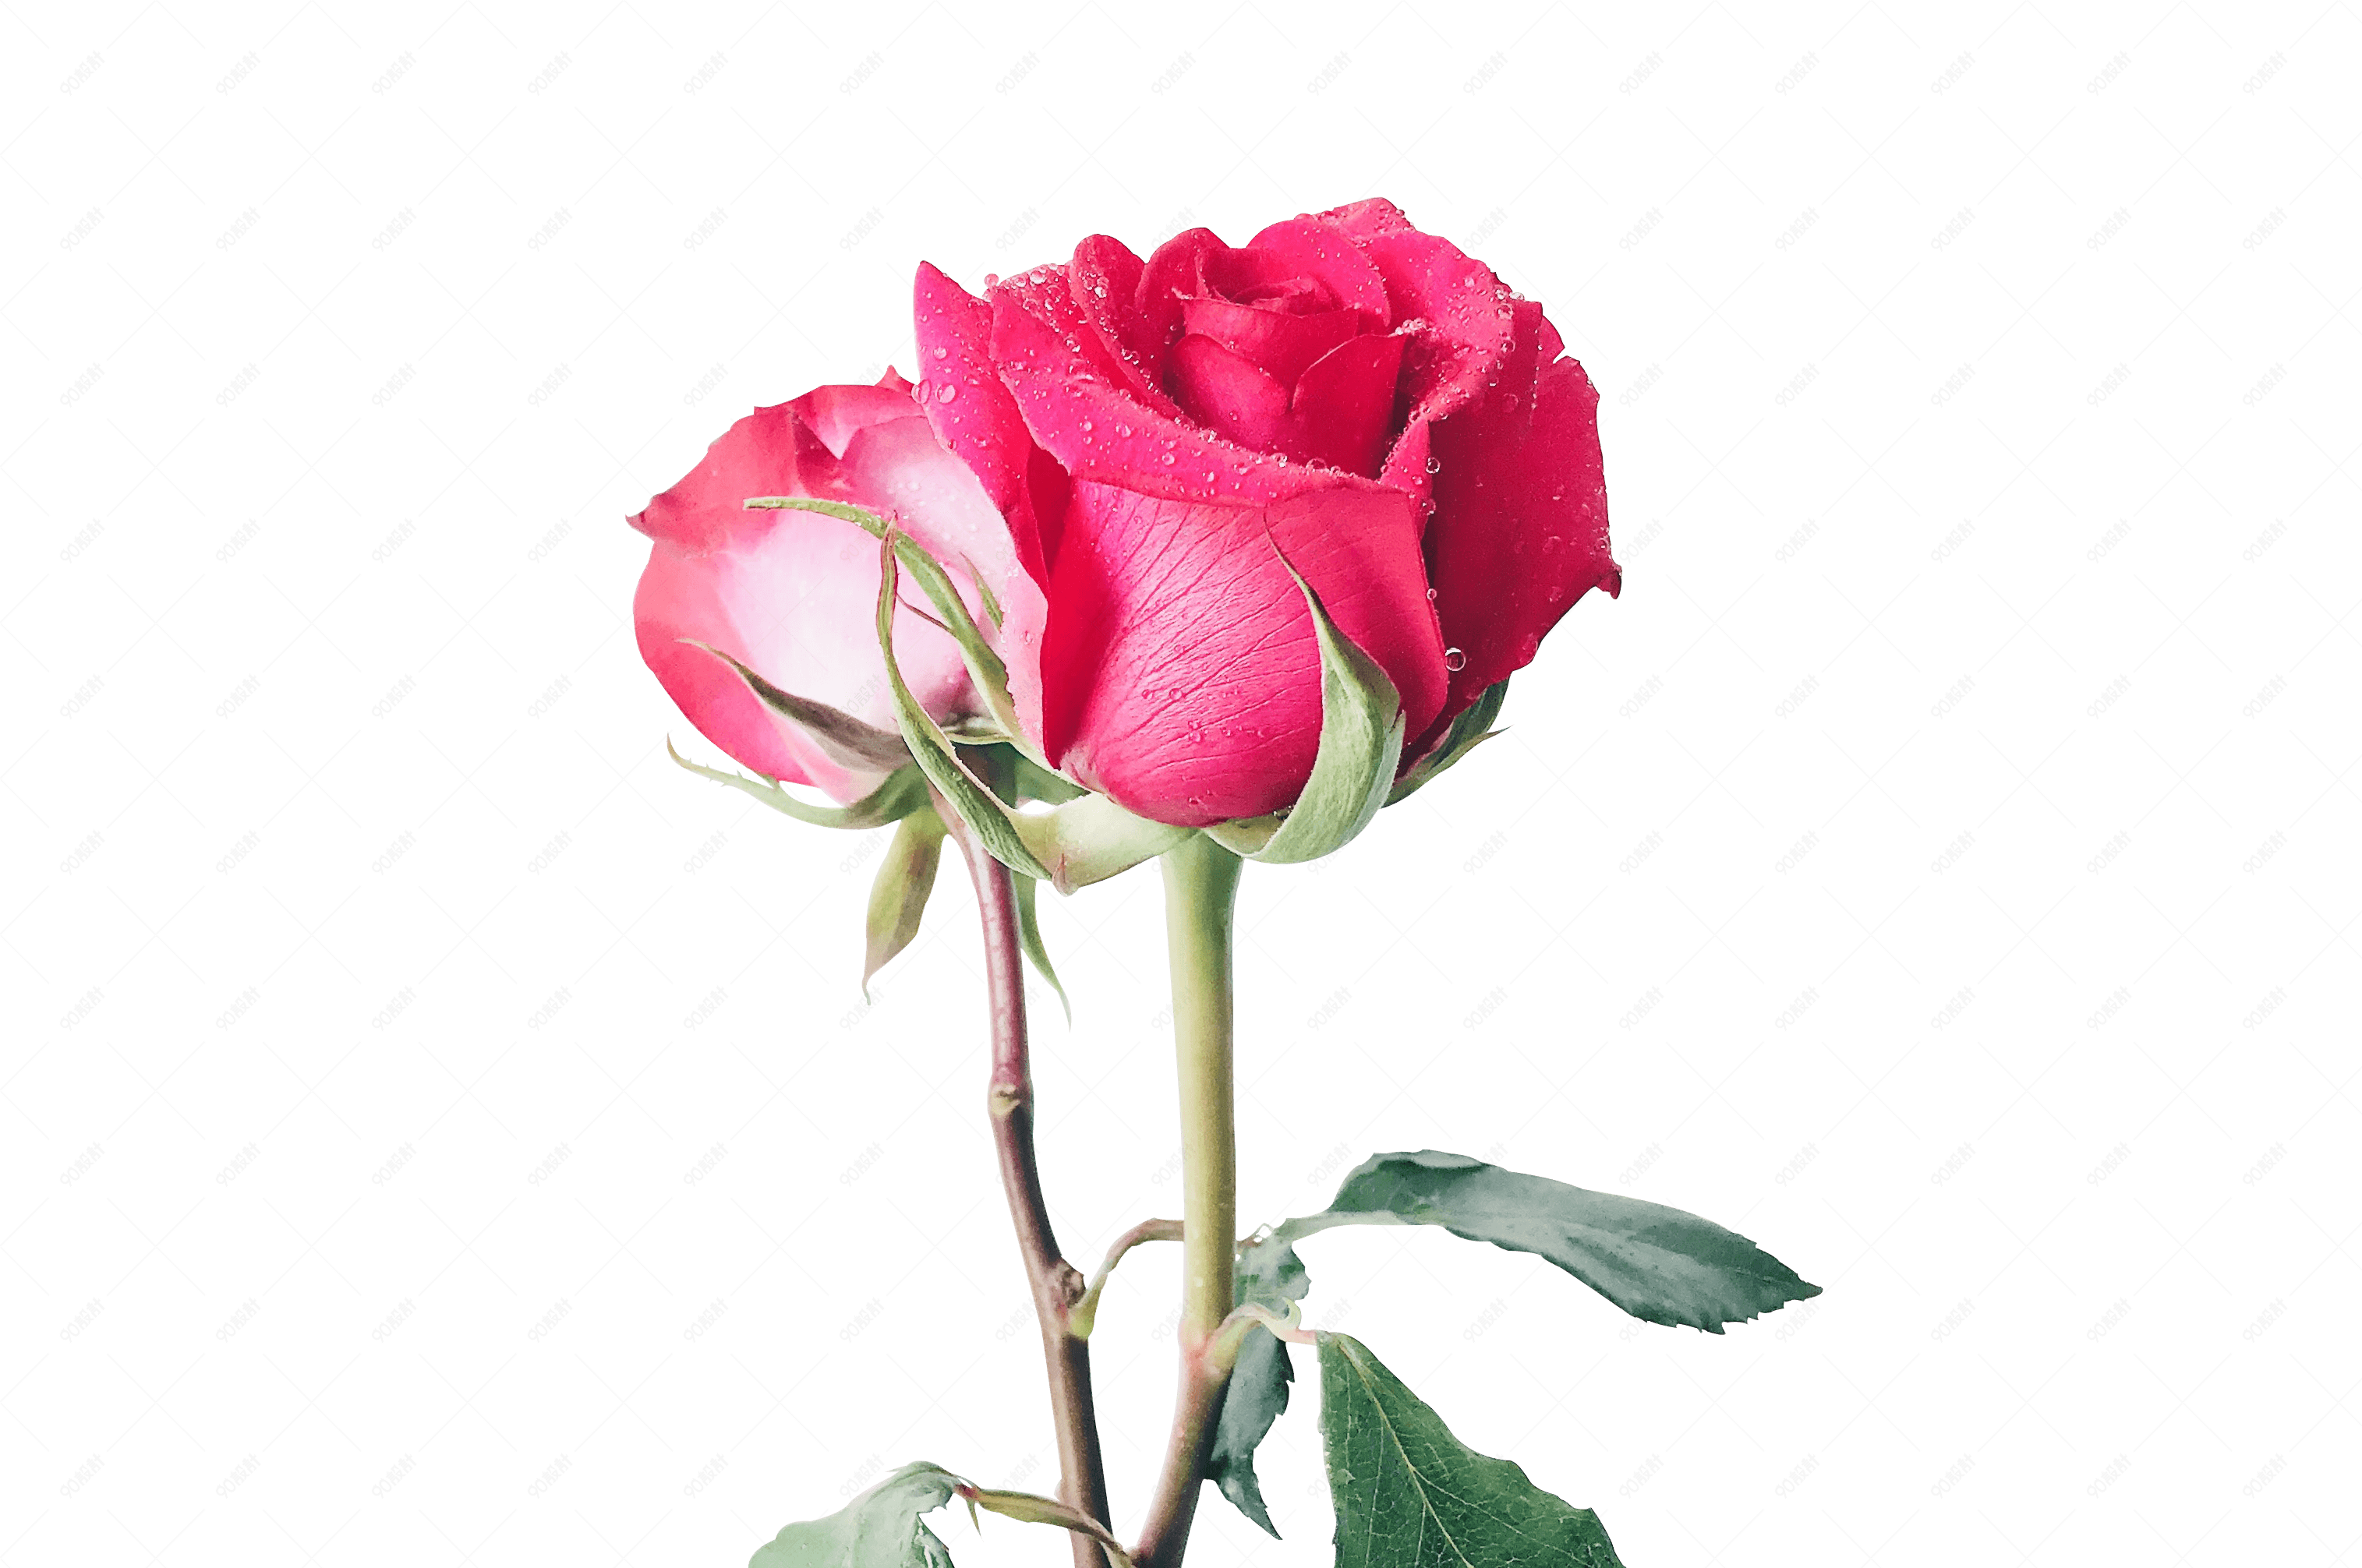 两朵玫瑰花图片唯美图片